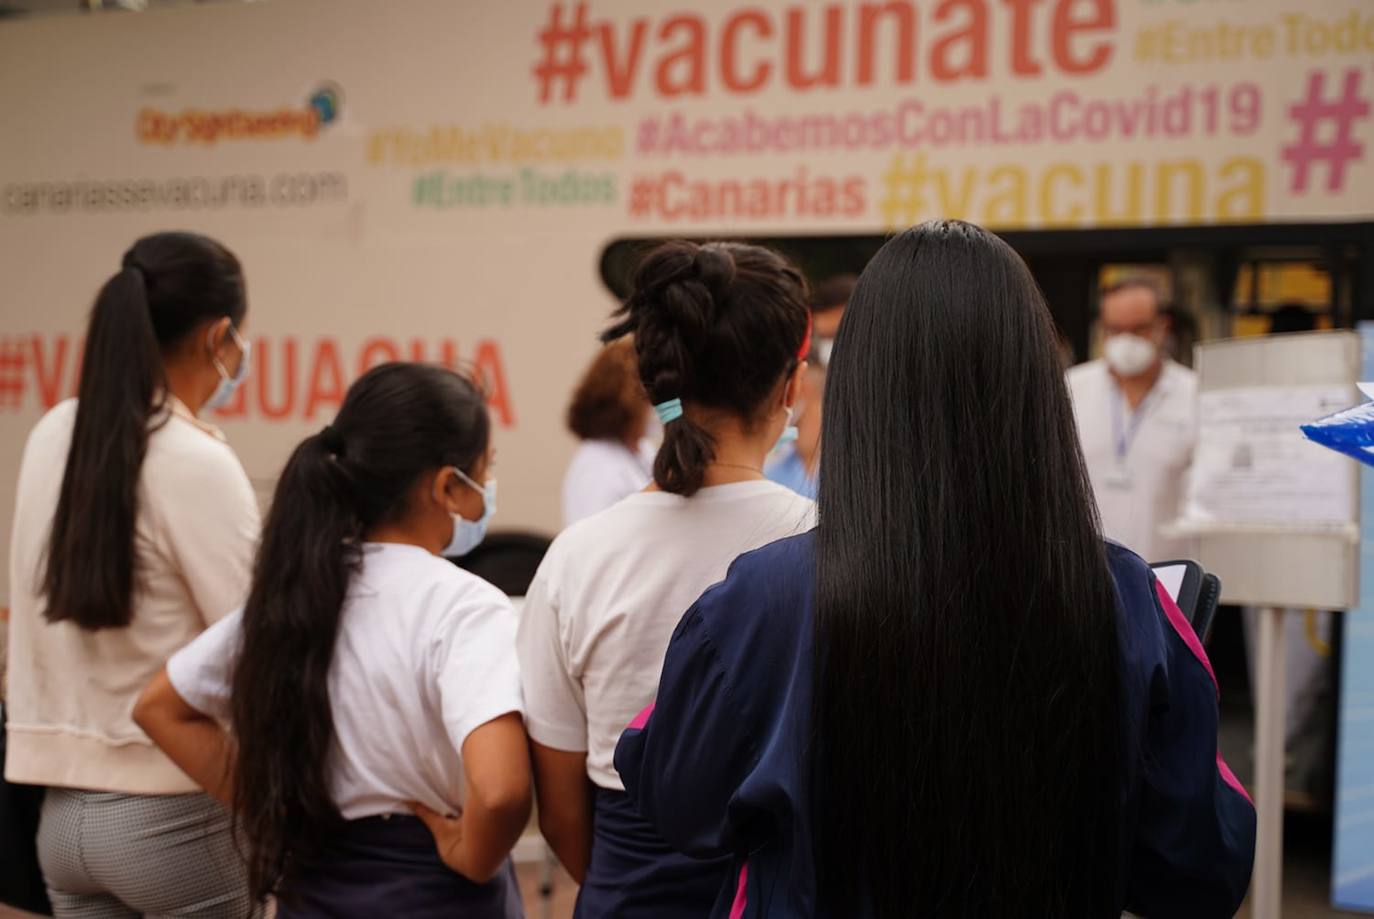 Fotos: Las vacuguaguas ya vacunan a los niños en los centros escolares